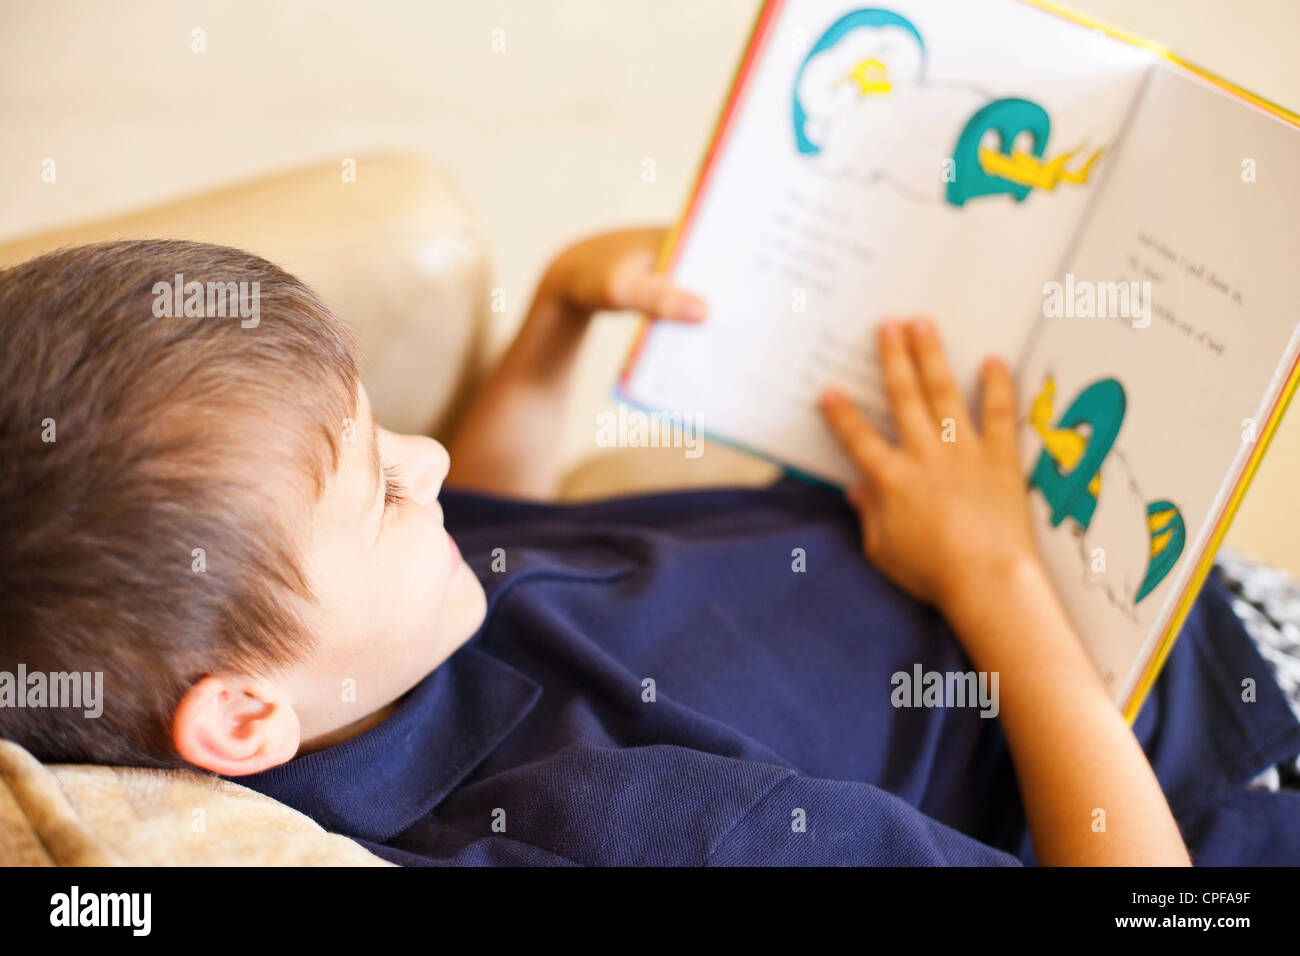 Boy reading a book Stock Photo